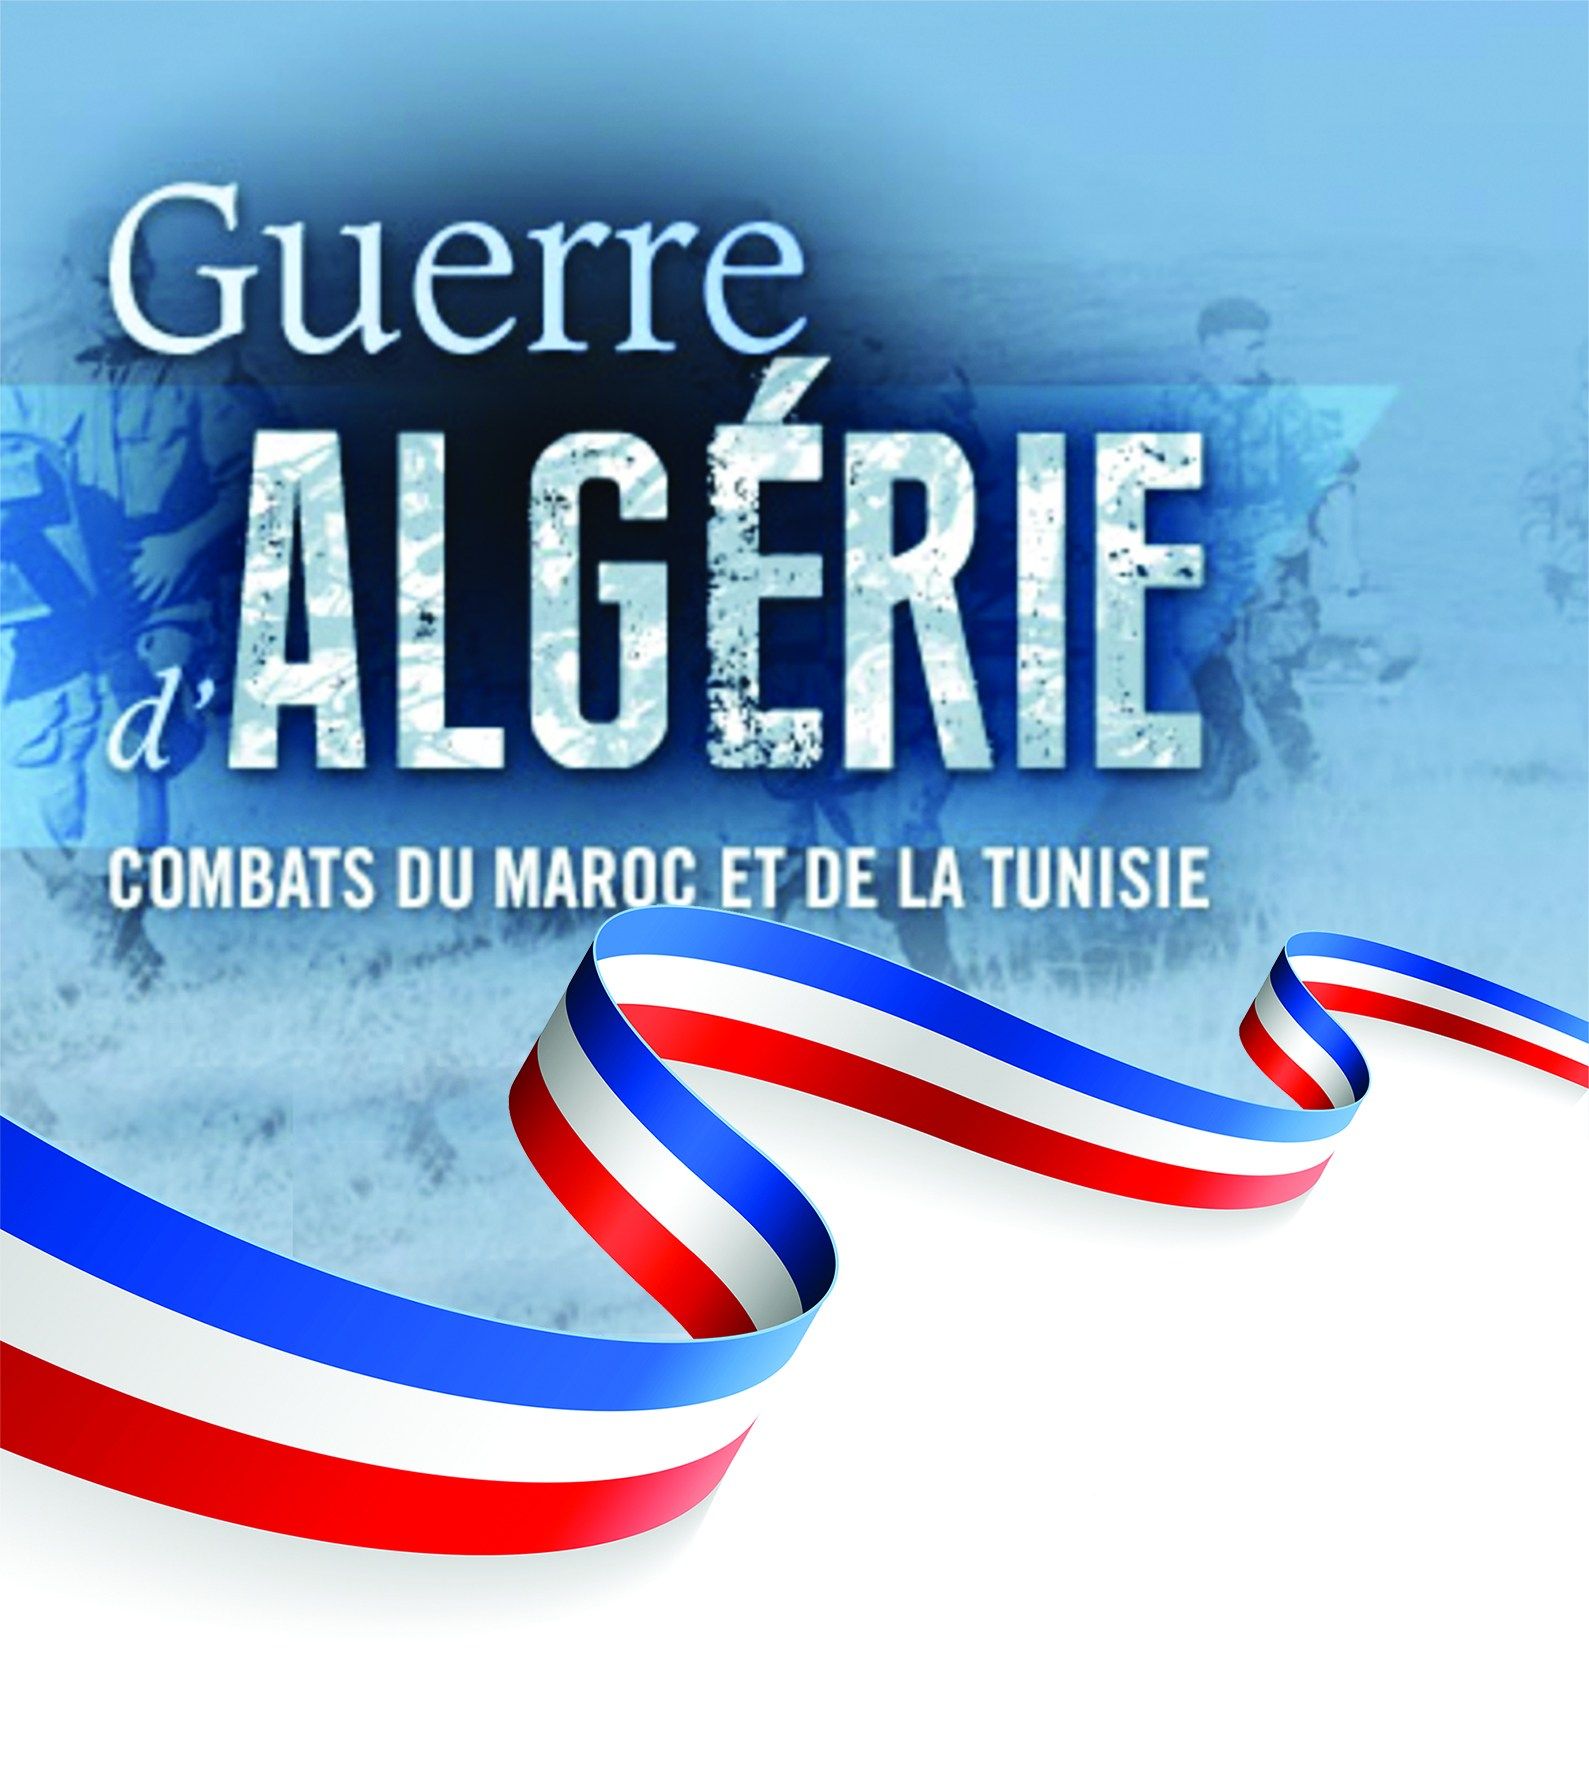 La municipalité vous invite à participer à la commémoration de la fin de la guerre d’Algérie et e...